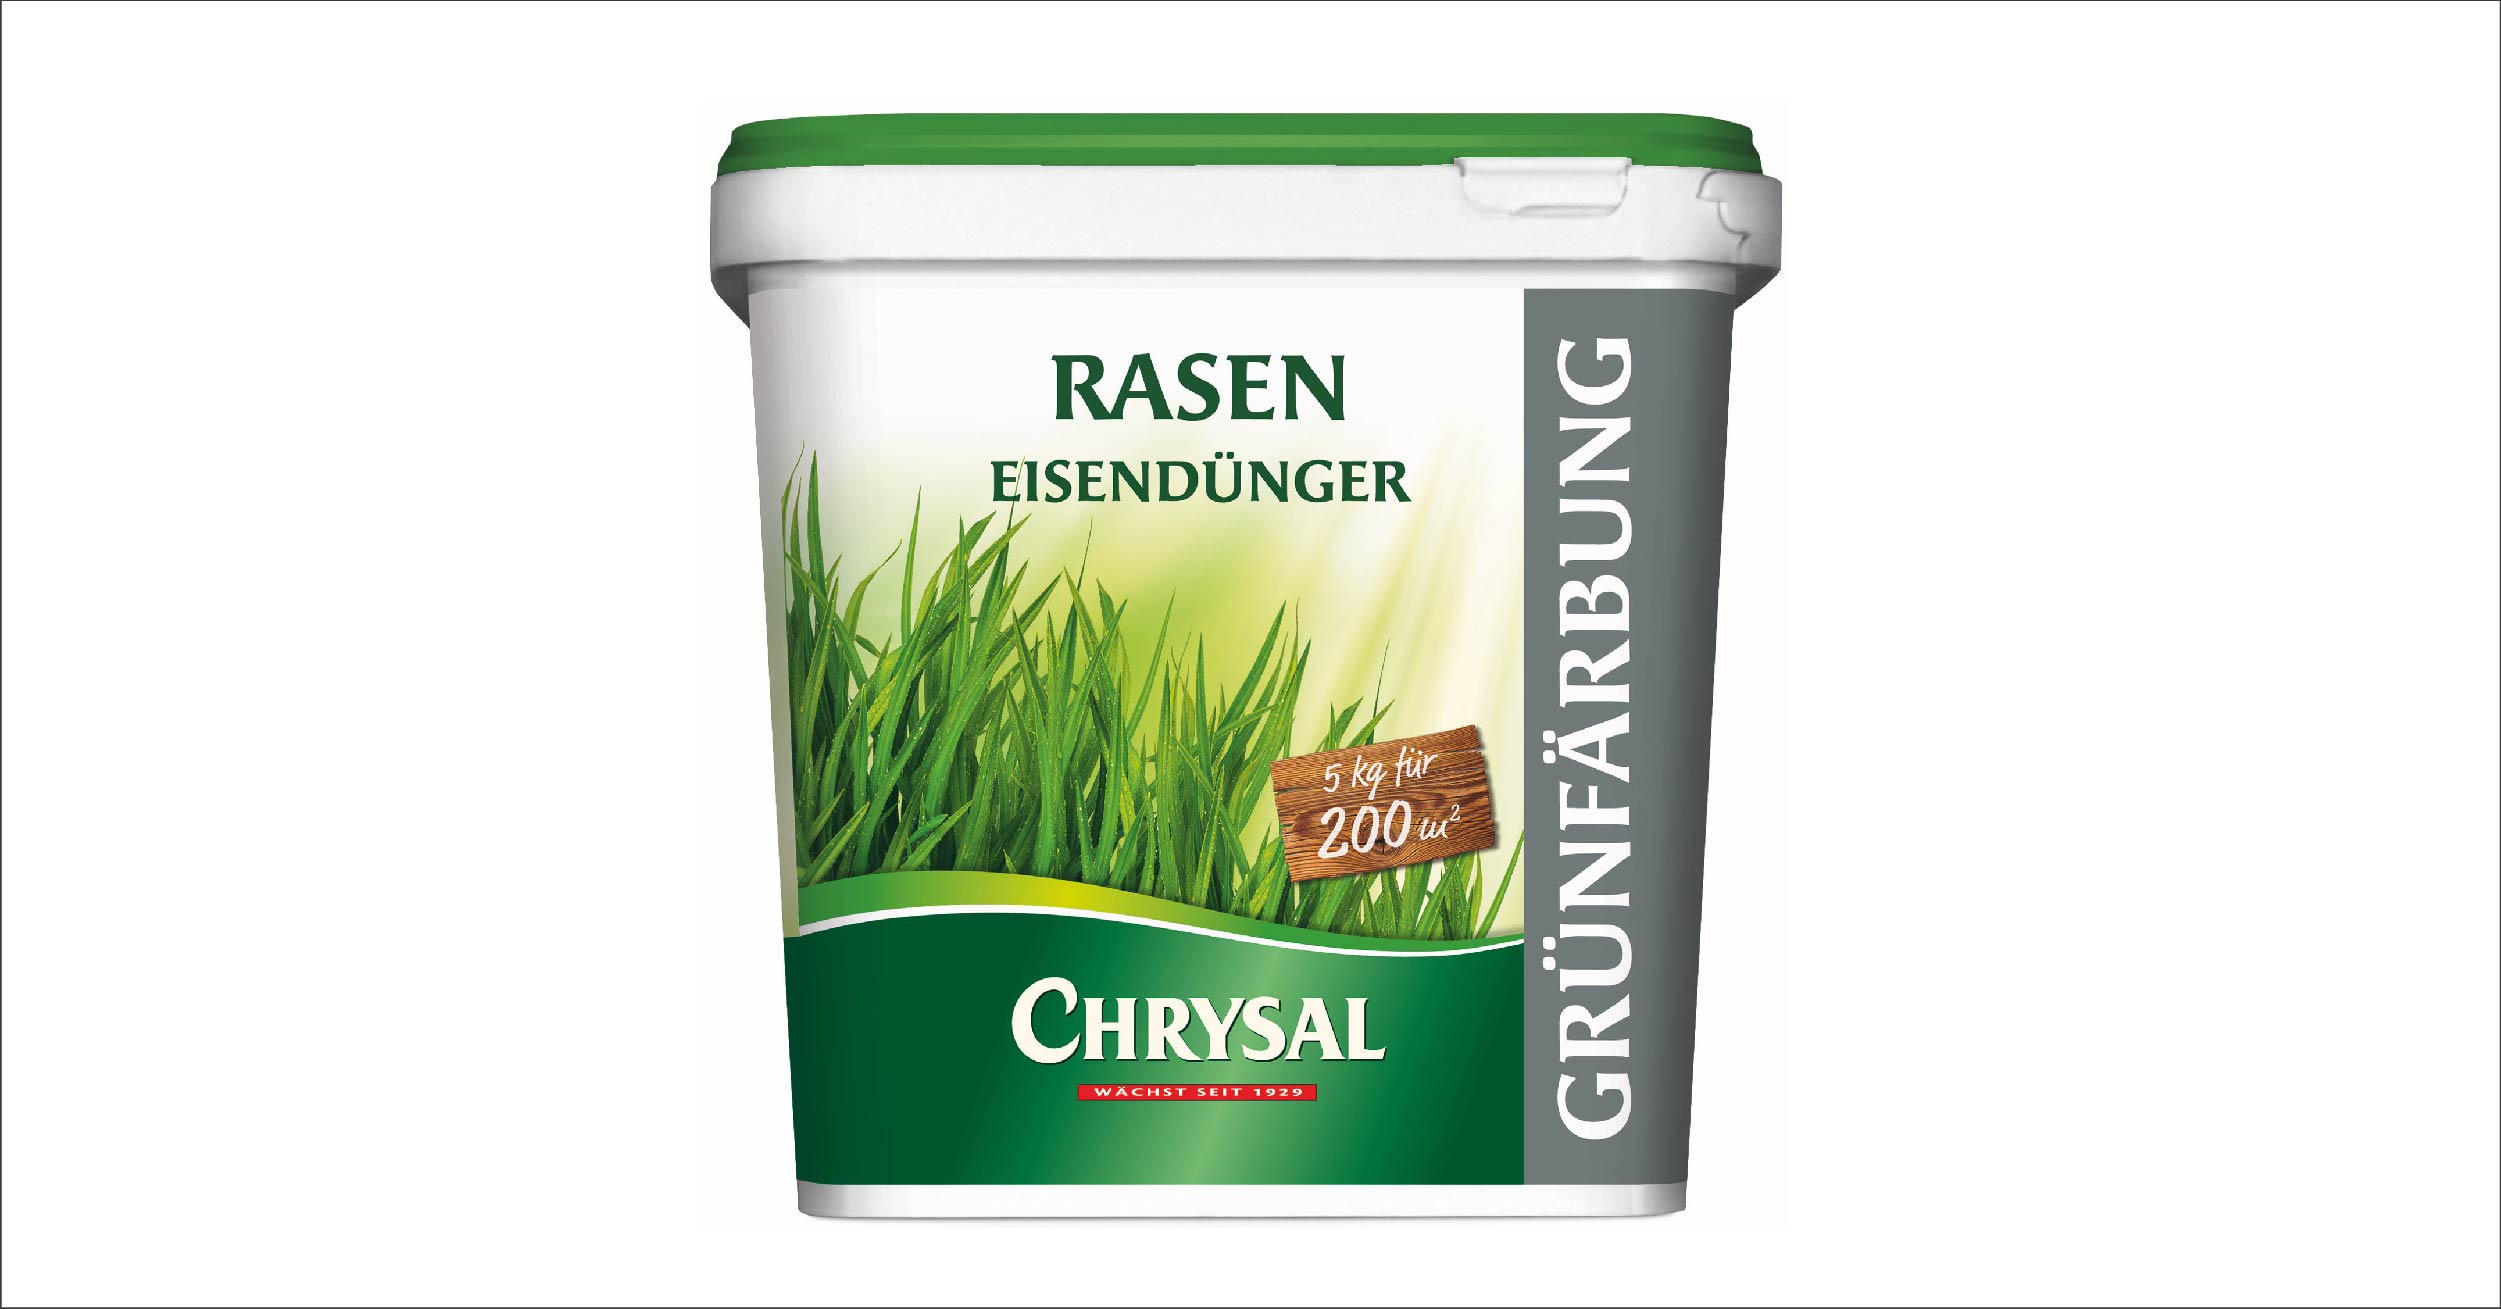 Chrysal Rasen Eisendünger